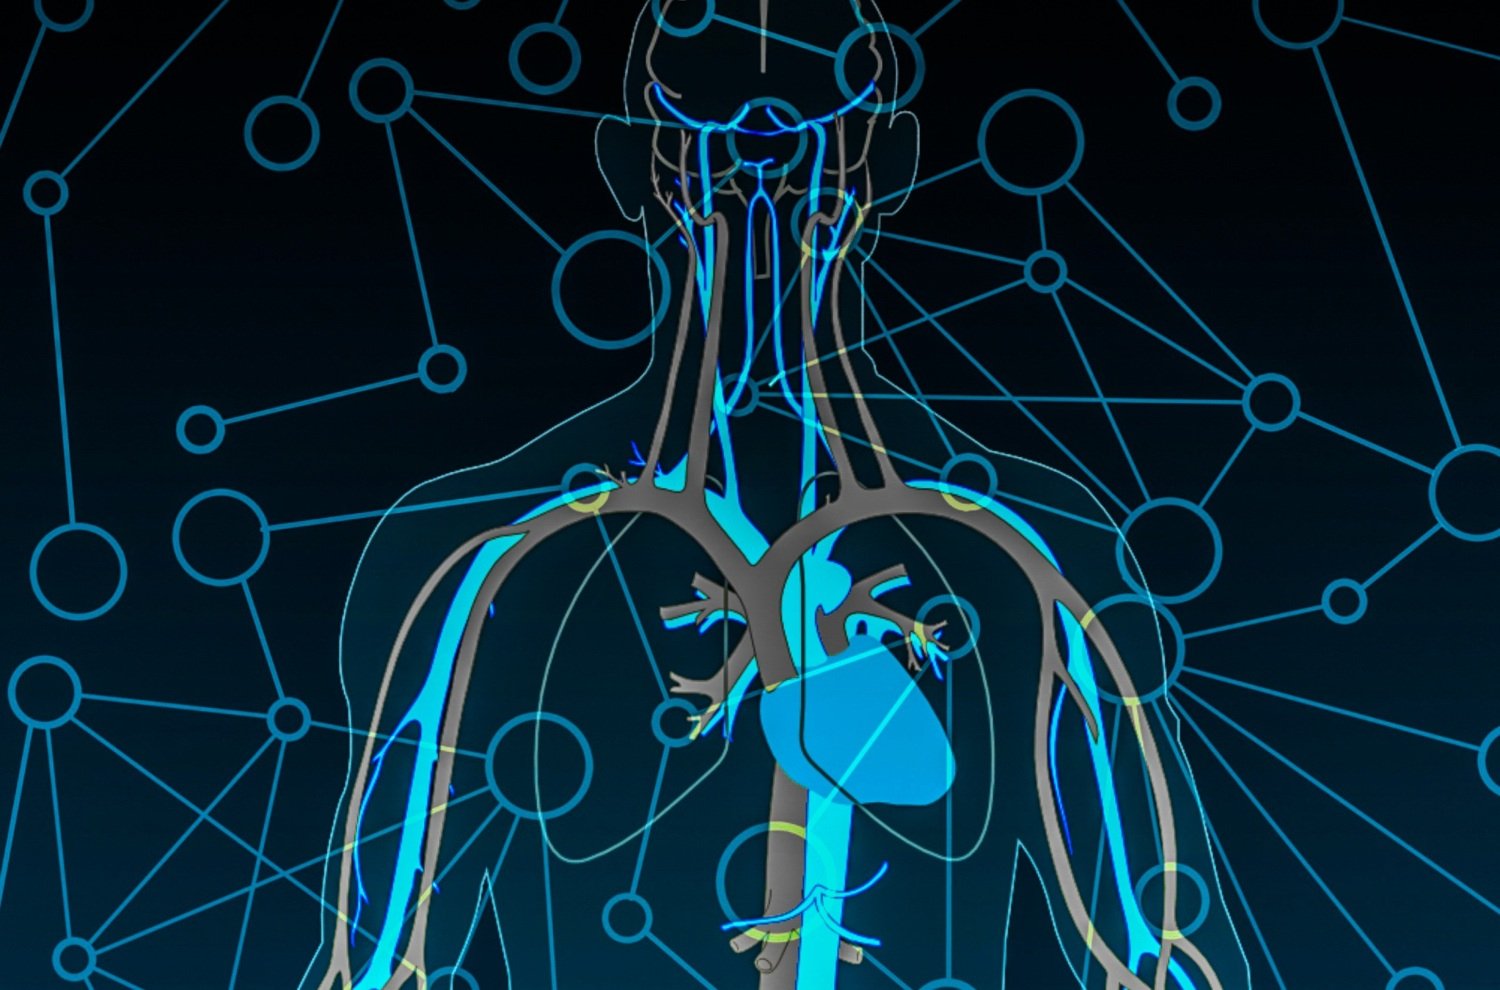 illustration av cirkulationssystemet i människokroppen, som ett nätverk.